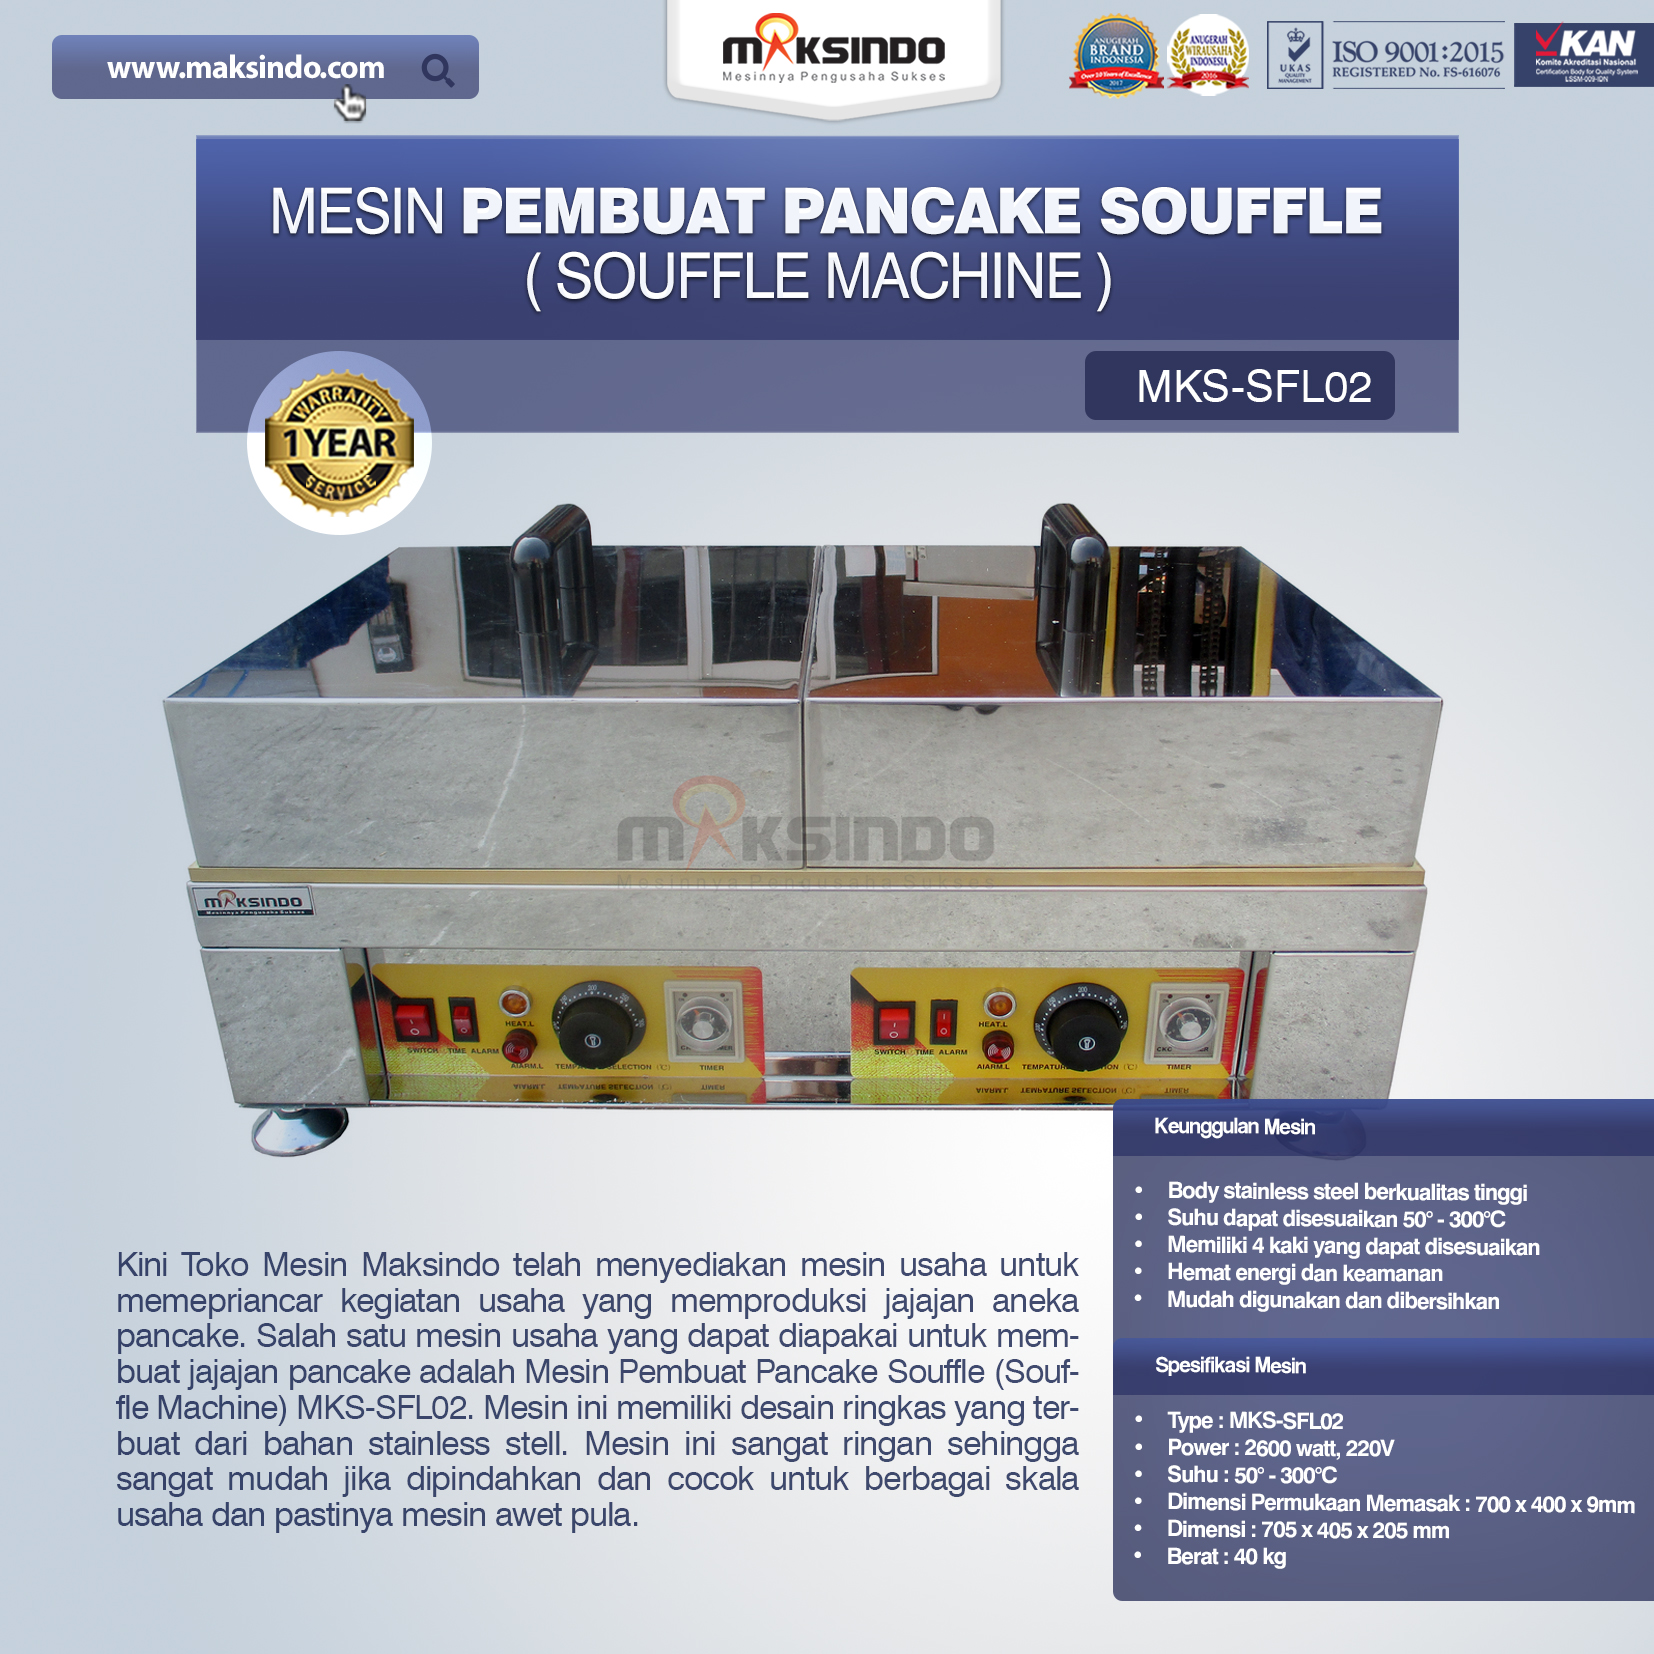 Jual Mesin Pembuat Pancake Souffle (Souffle Machine) MKS-SFL02 di Solo